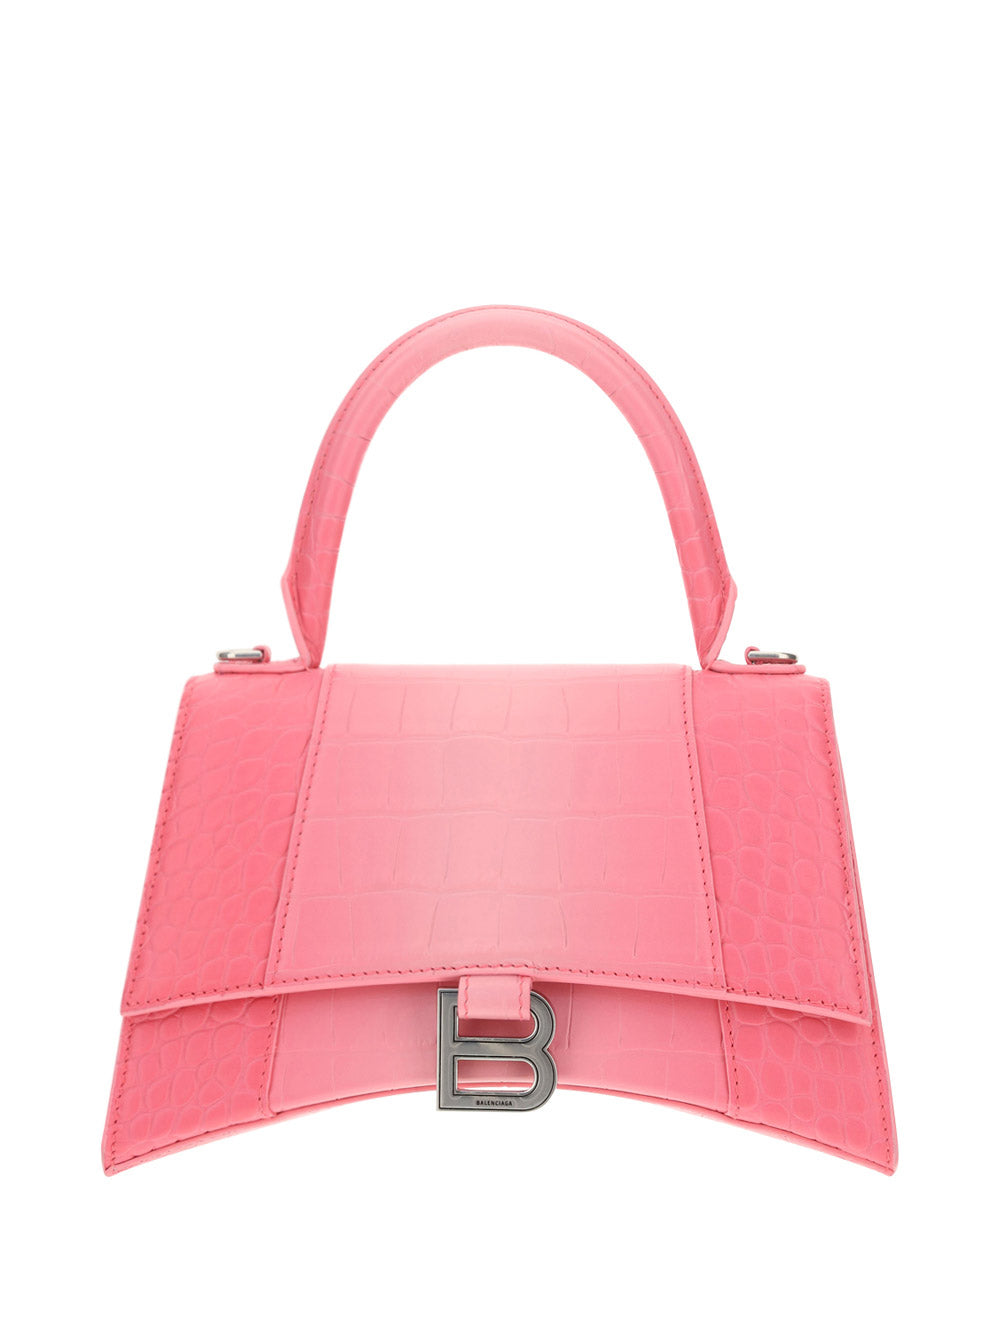 Hourglass Small Handbag - Pink